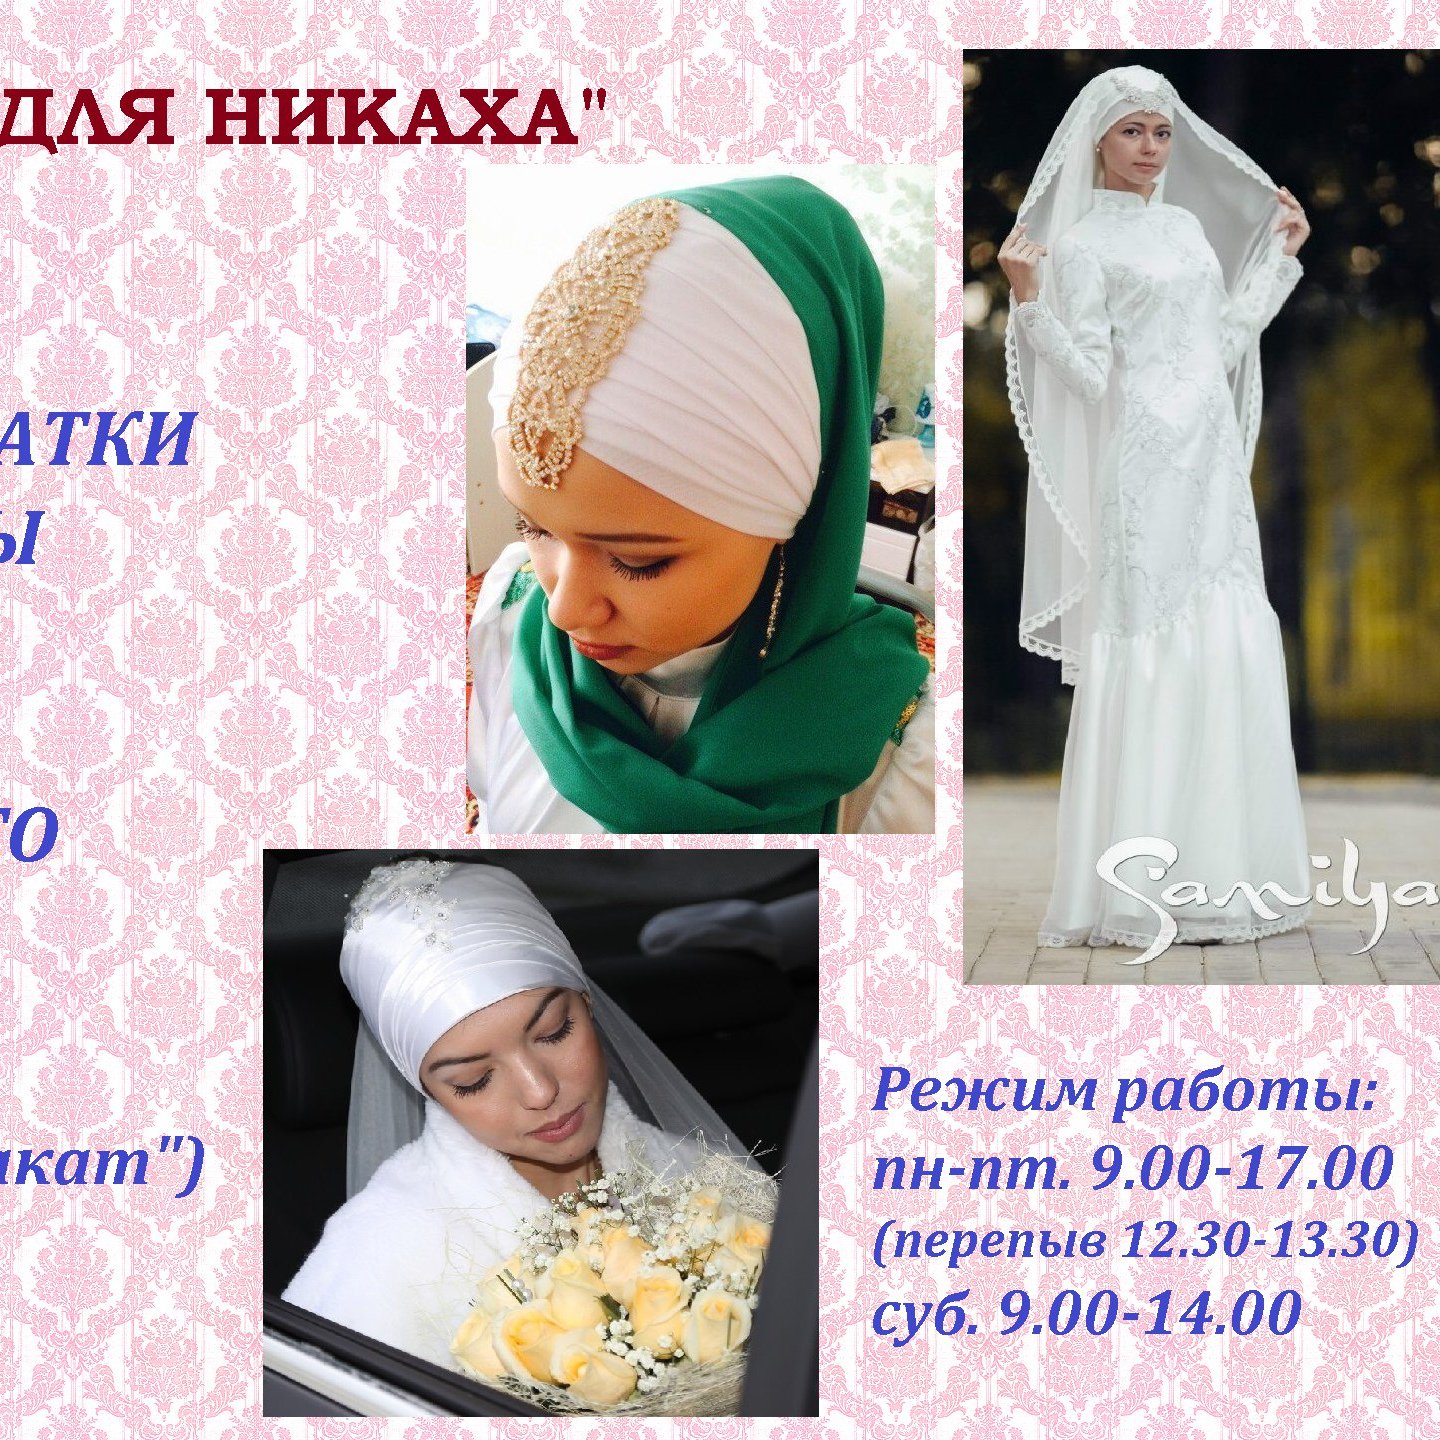 Слова на никах на татарском. С днём никаха поздравление. С годовщиной никаха поздравления. С днём никаха поздравление открытки. Поздравления с днём никаха на татарском.